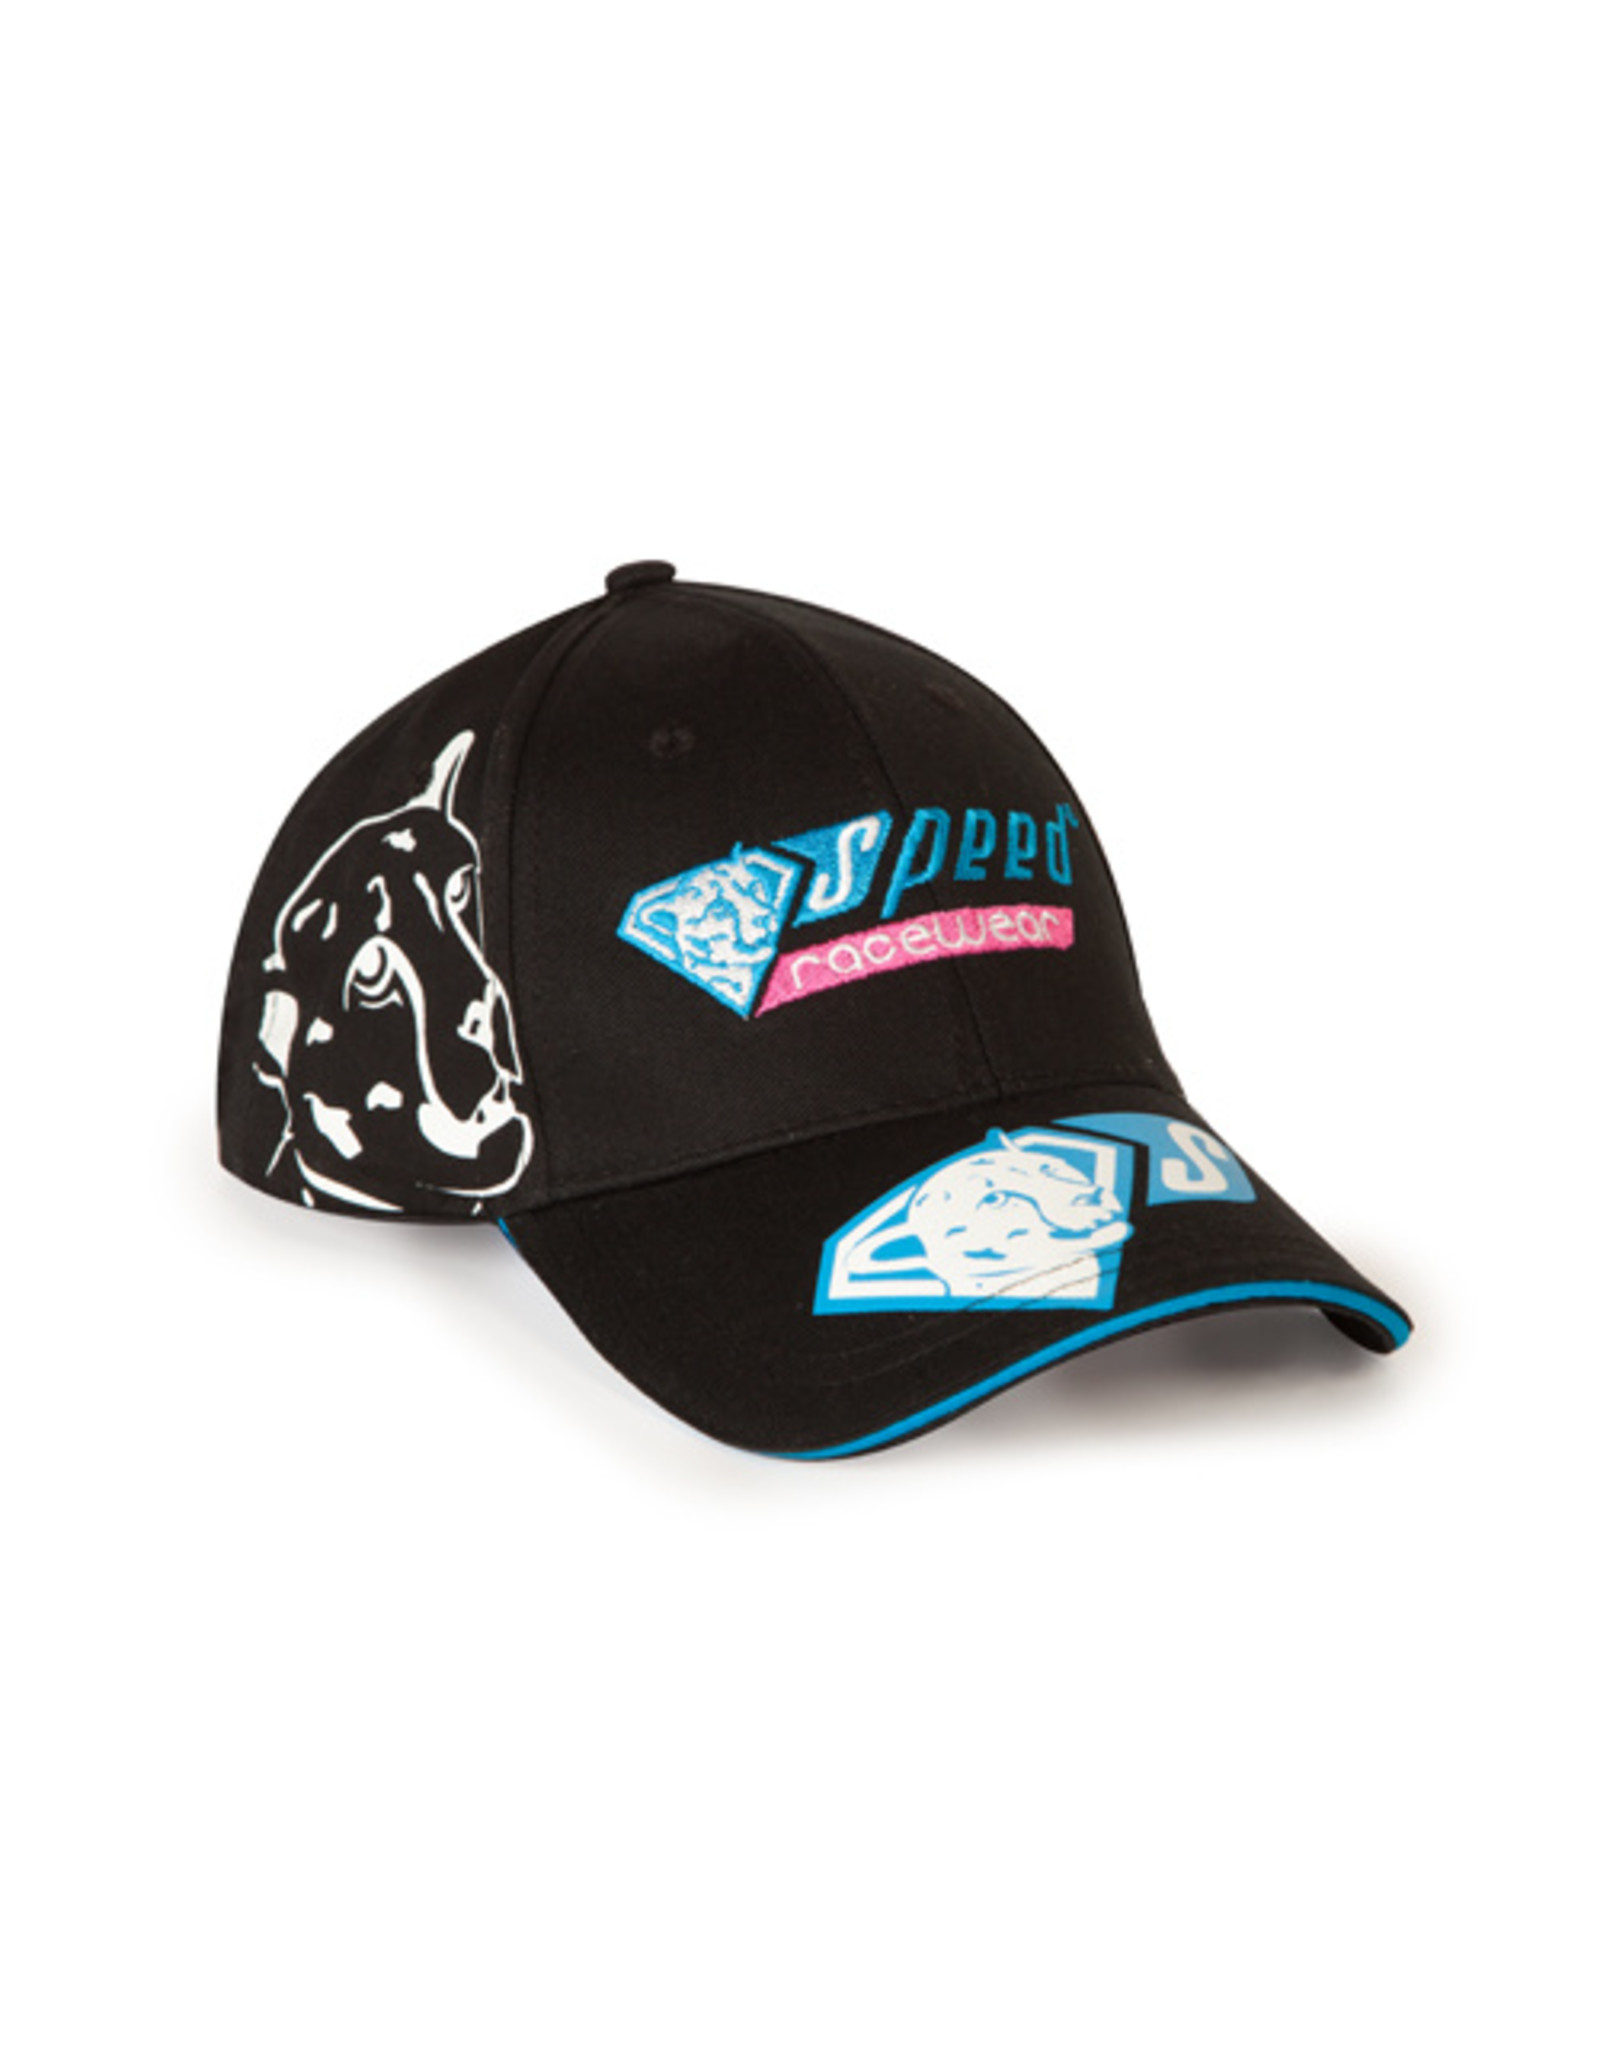 Speed Racewear Speed racewear hat